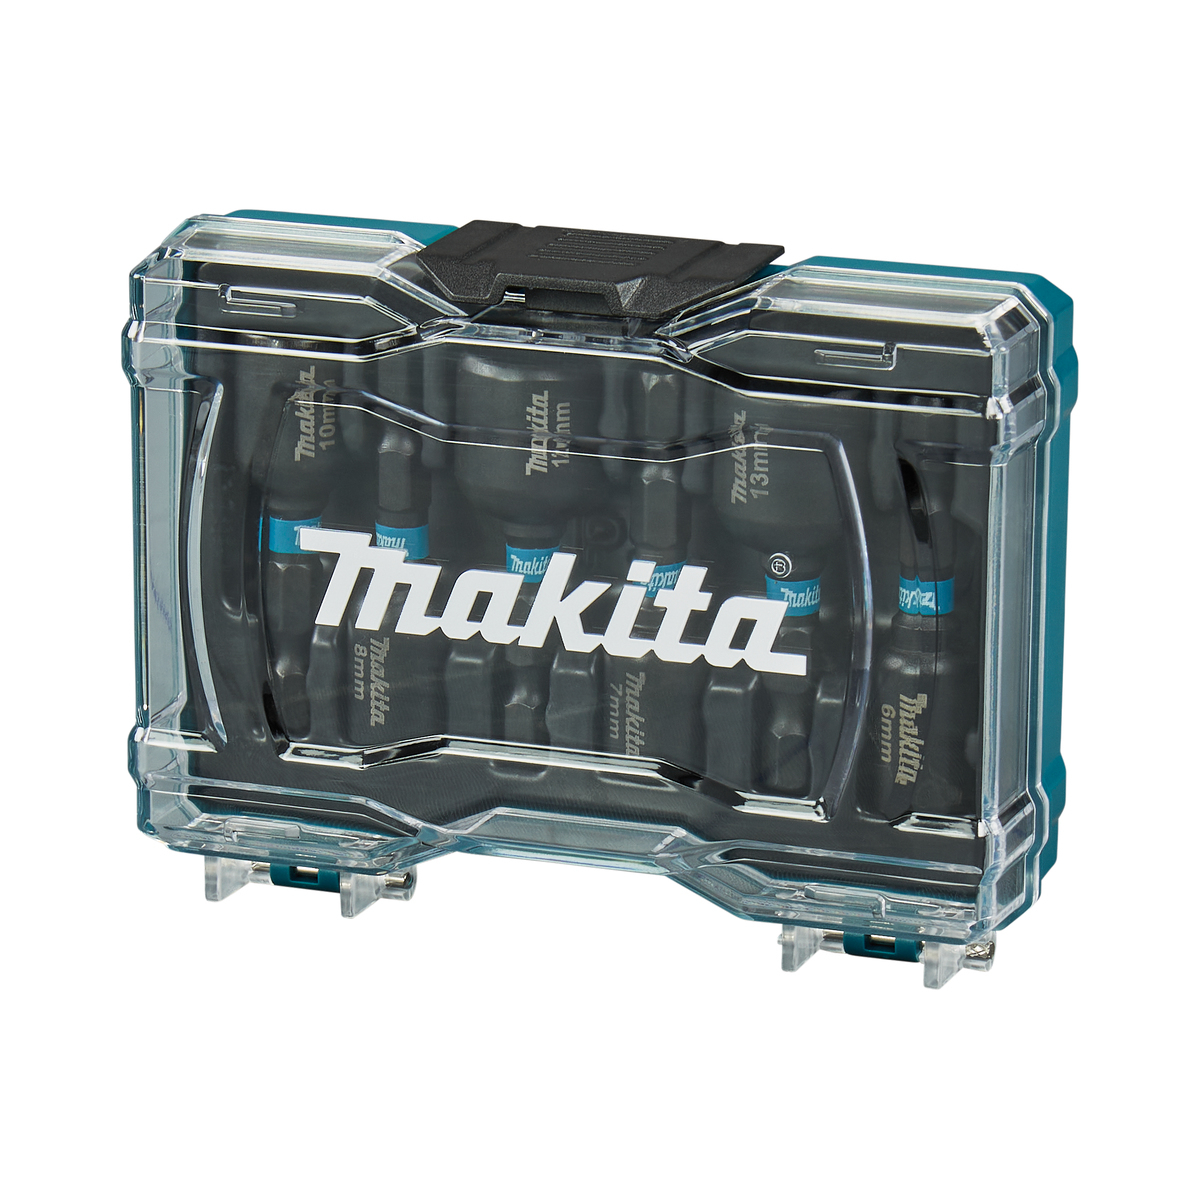 Coffret douilles à choc 1/2 Makita avec adaptateur 13-17-19-21-22-24 mm